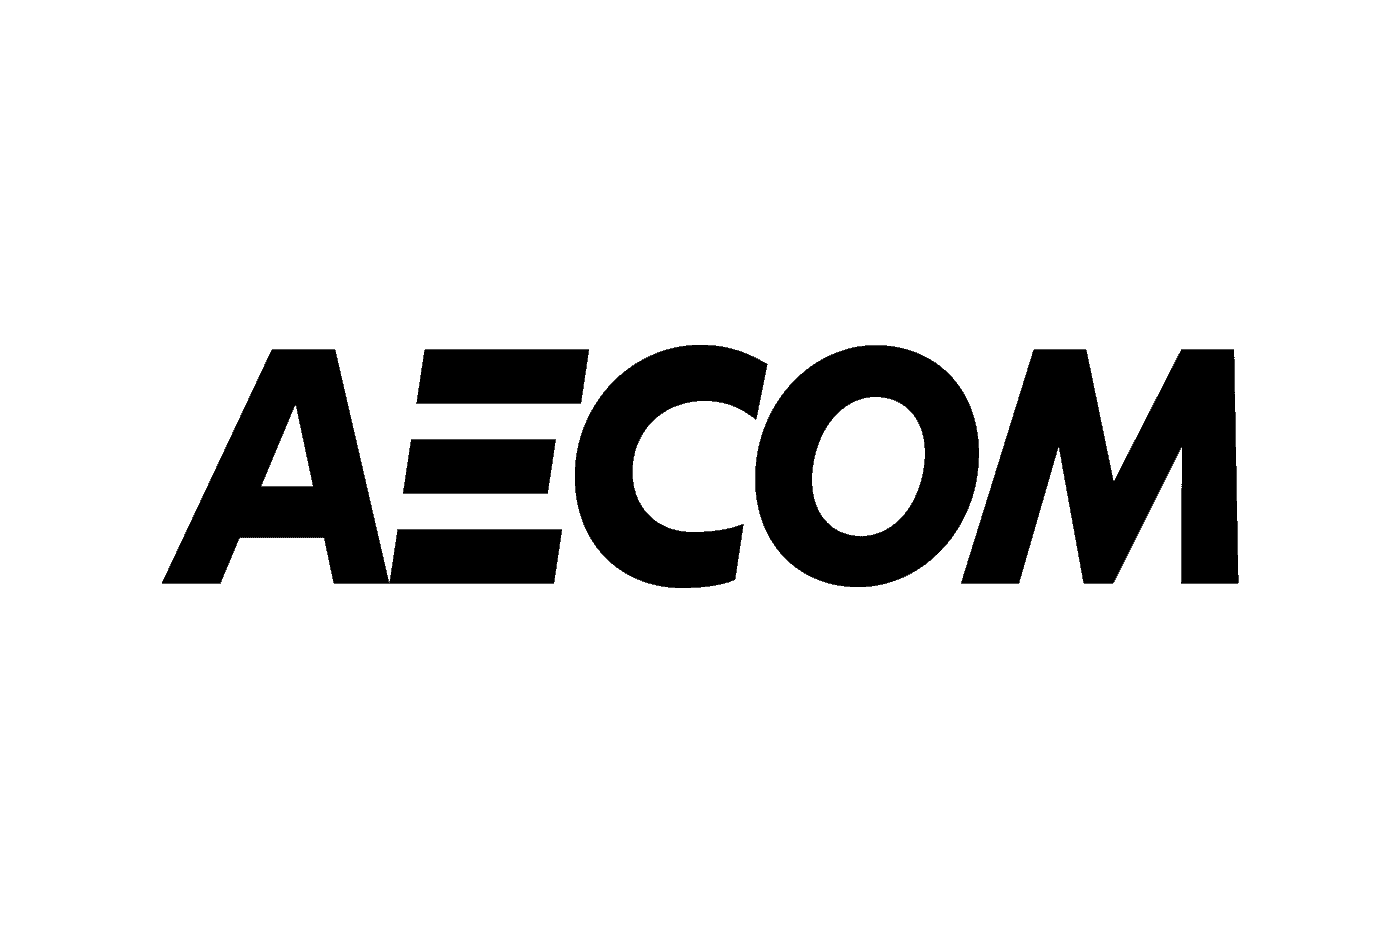 AECOM - logo